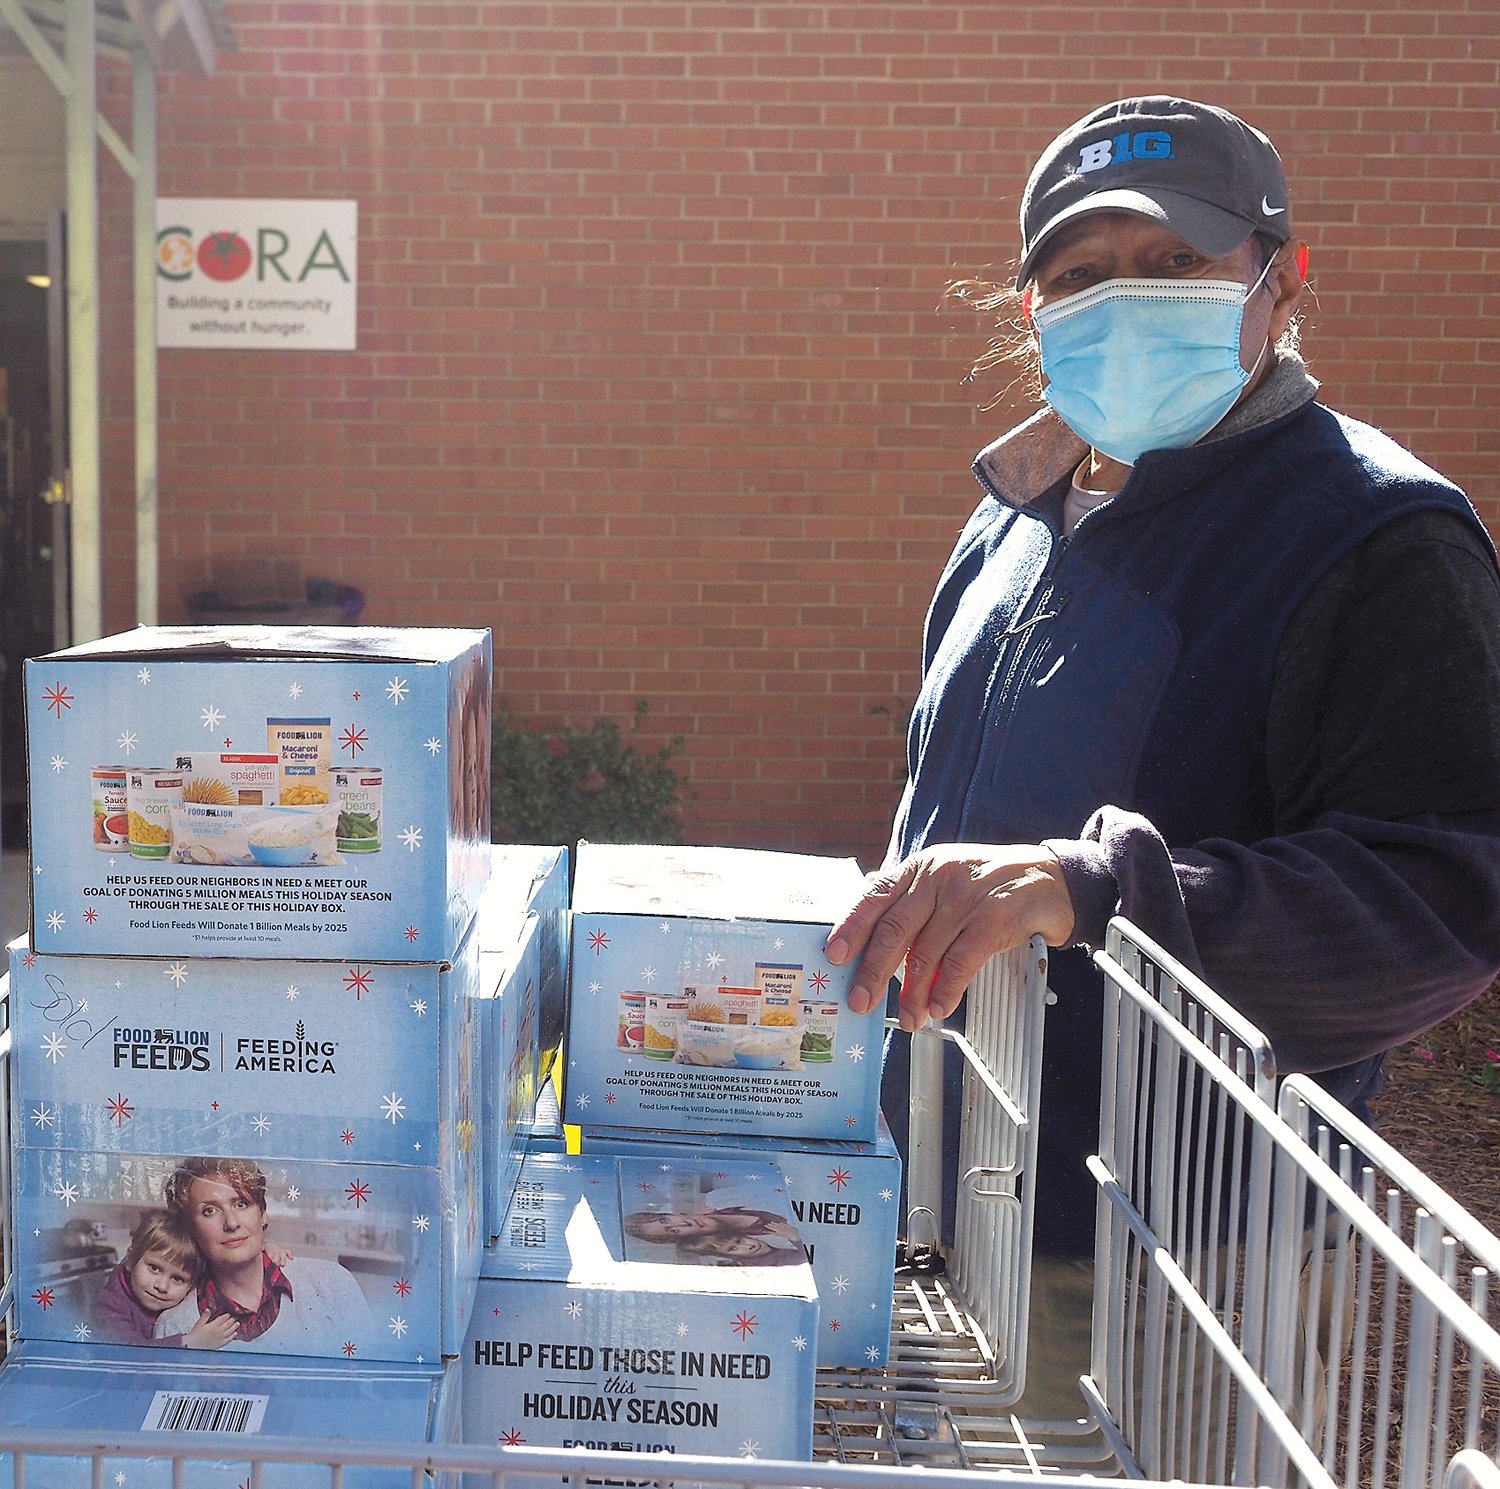 Enrique Romero-Hermandez, a CORA volunteer, helps prepare for the distribution.